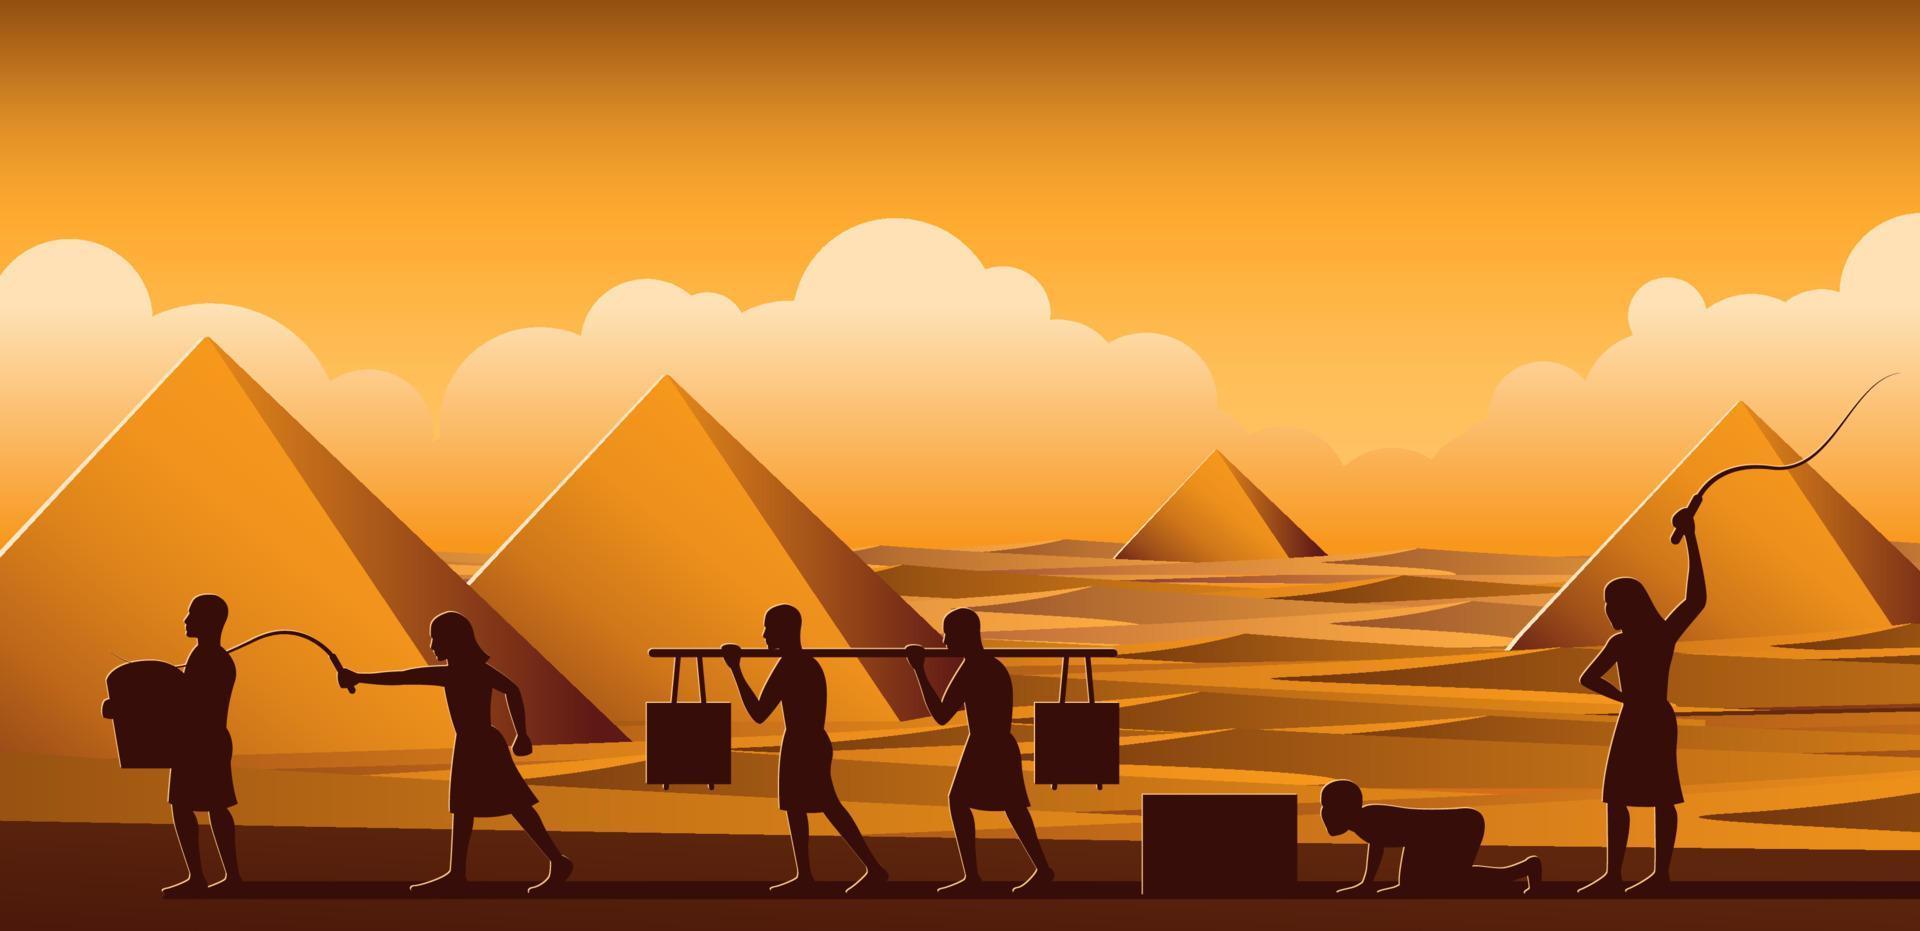 Gebäude Pyramide in Ägypten in der Antike verwenden Männer, um den ganzen Tag Sklave zu sein, Cartoon-Version vektor